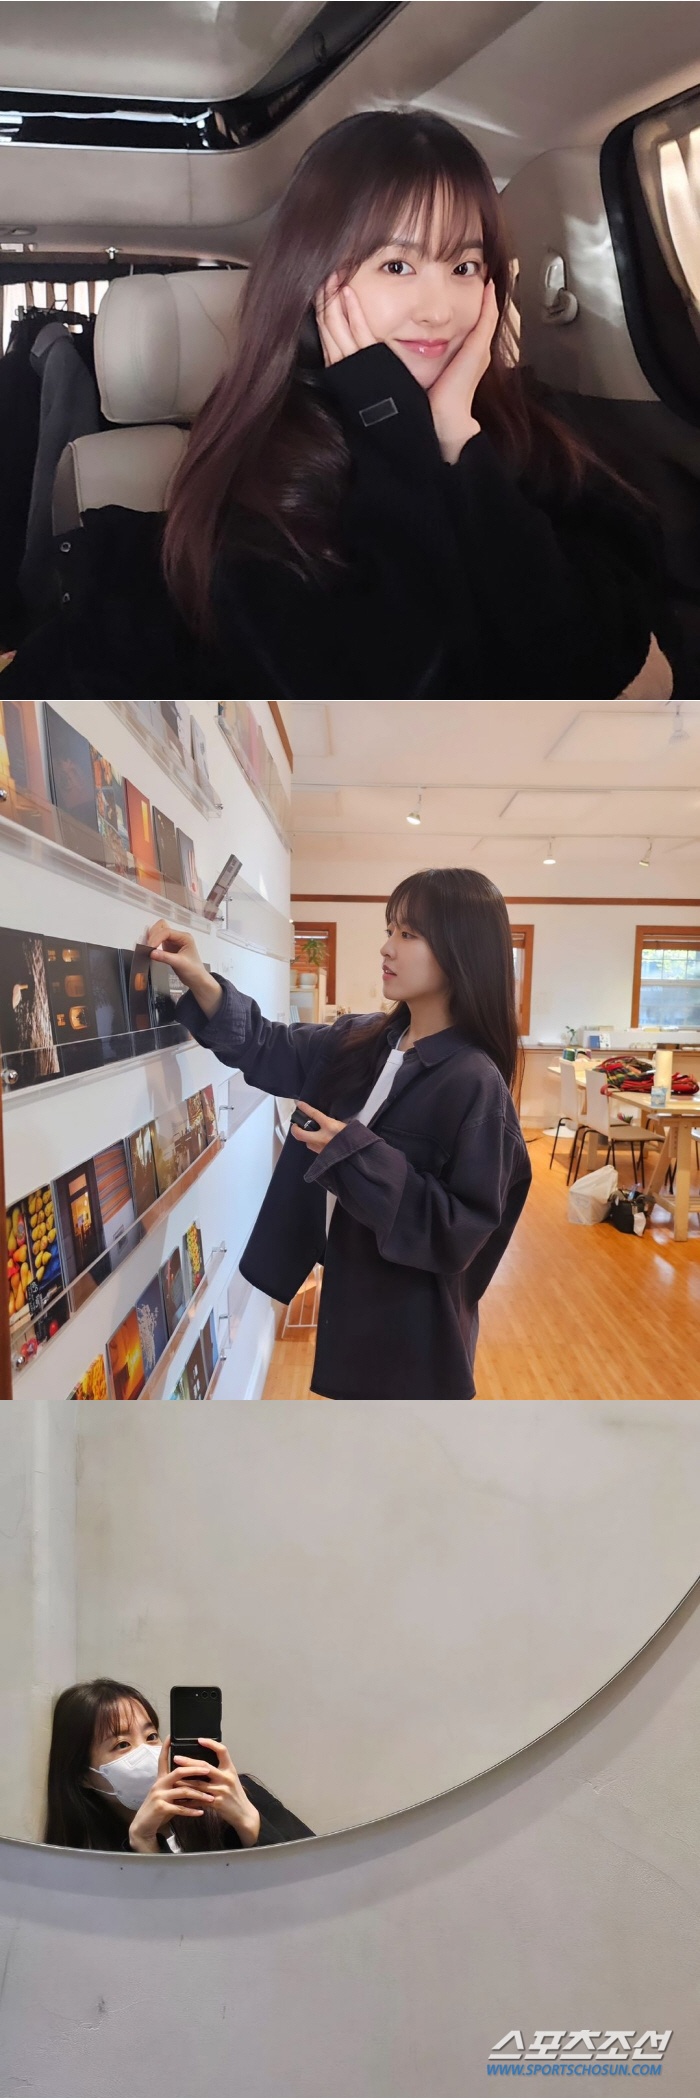 마스크로도 감춰지지 않는 미모…박보영, 싱그러운 미소 담긴 셀카 공개